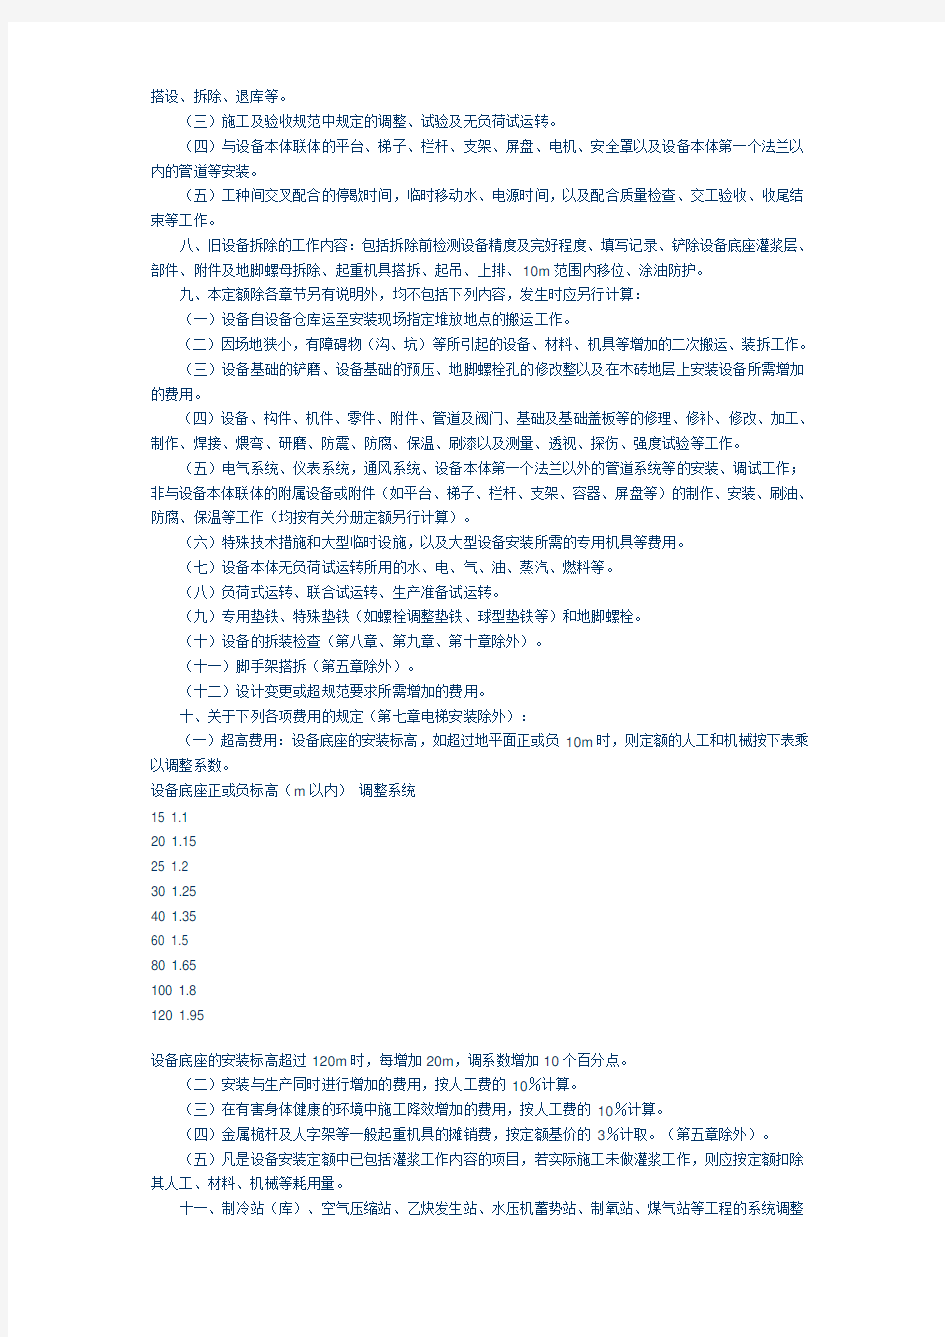 上海市安装工程预算定额2000 说明